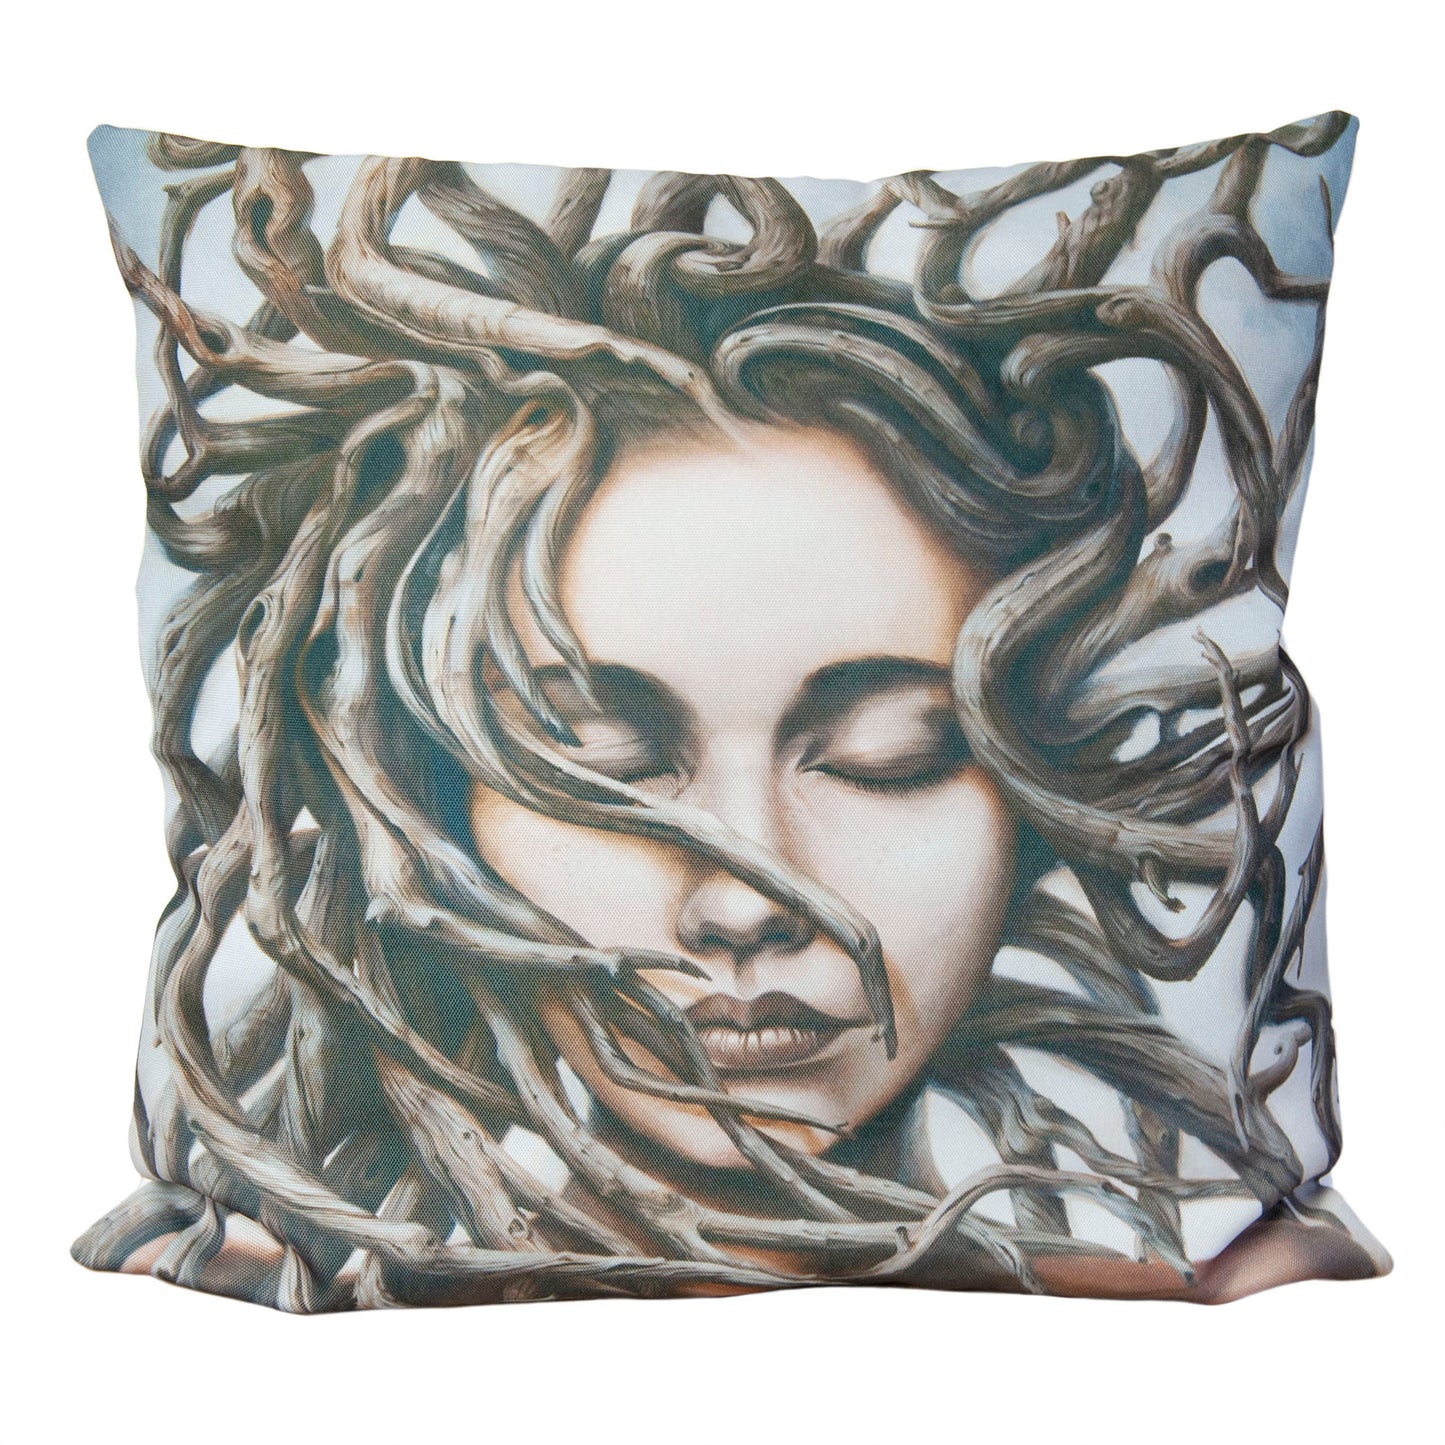 Cushion cover featuring 'Gaia' artwork